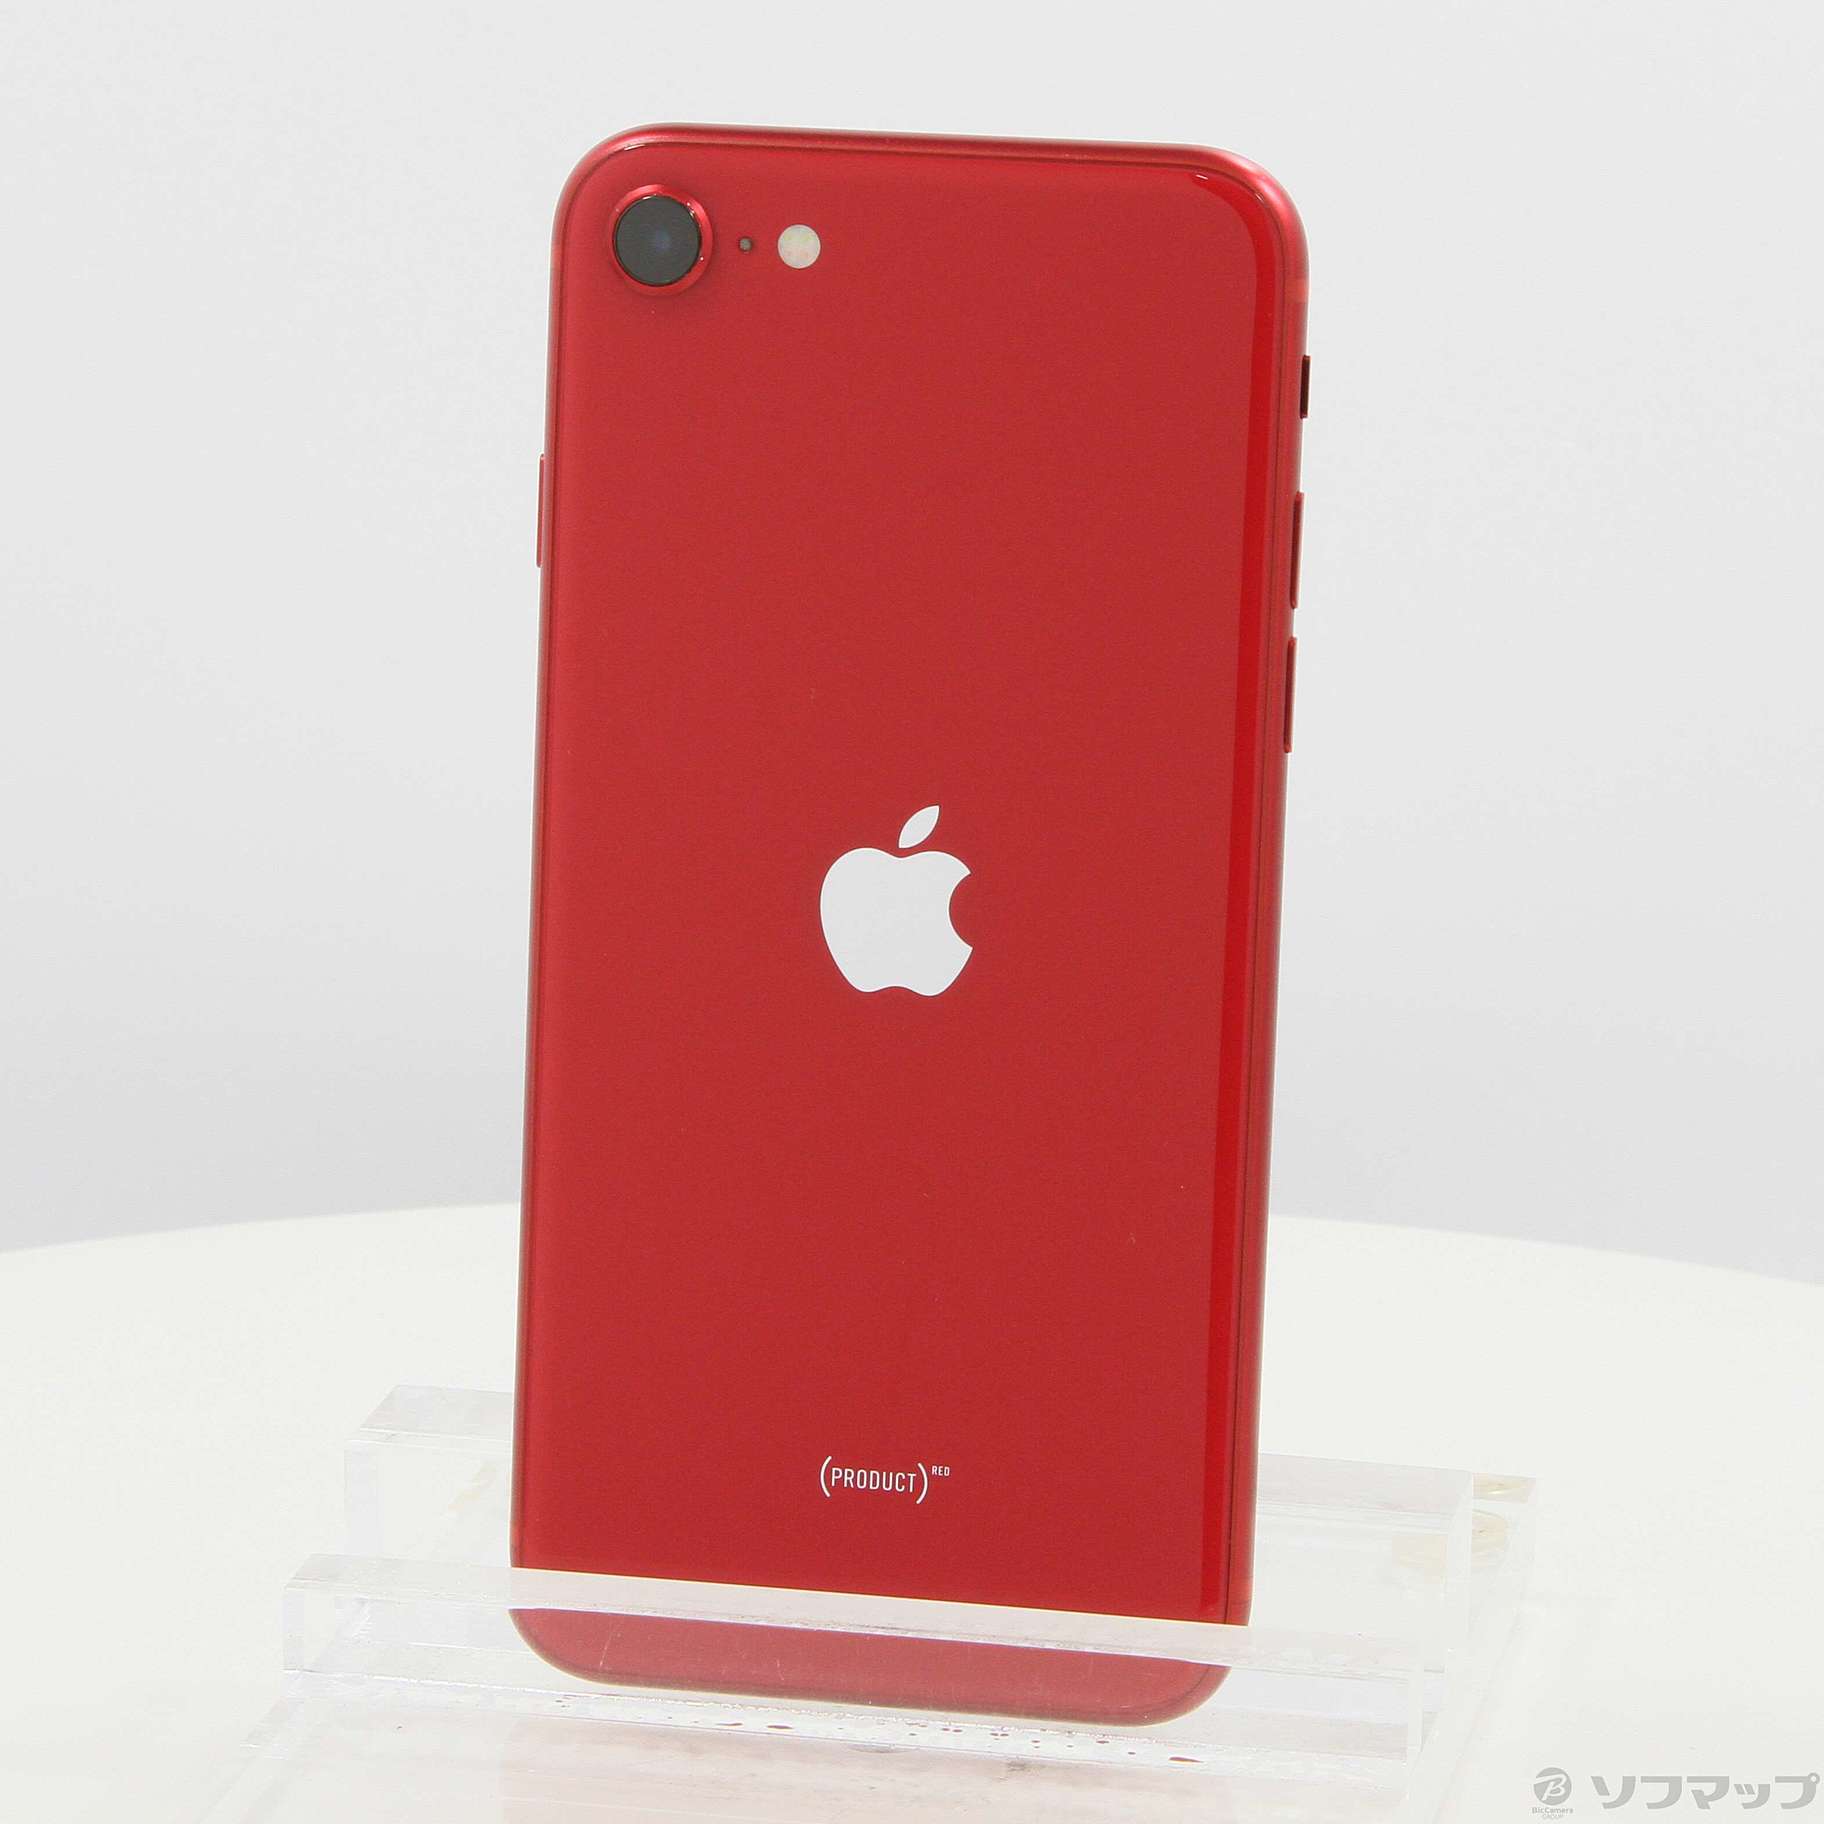 【ランクS】iPhone SE (第3世代) レッド 256 GB SIMフリー本体のみ